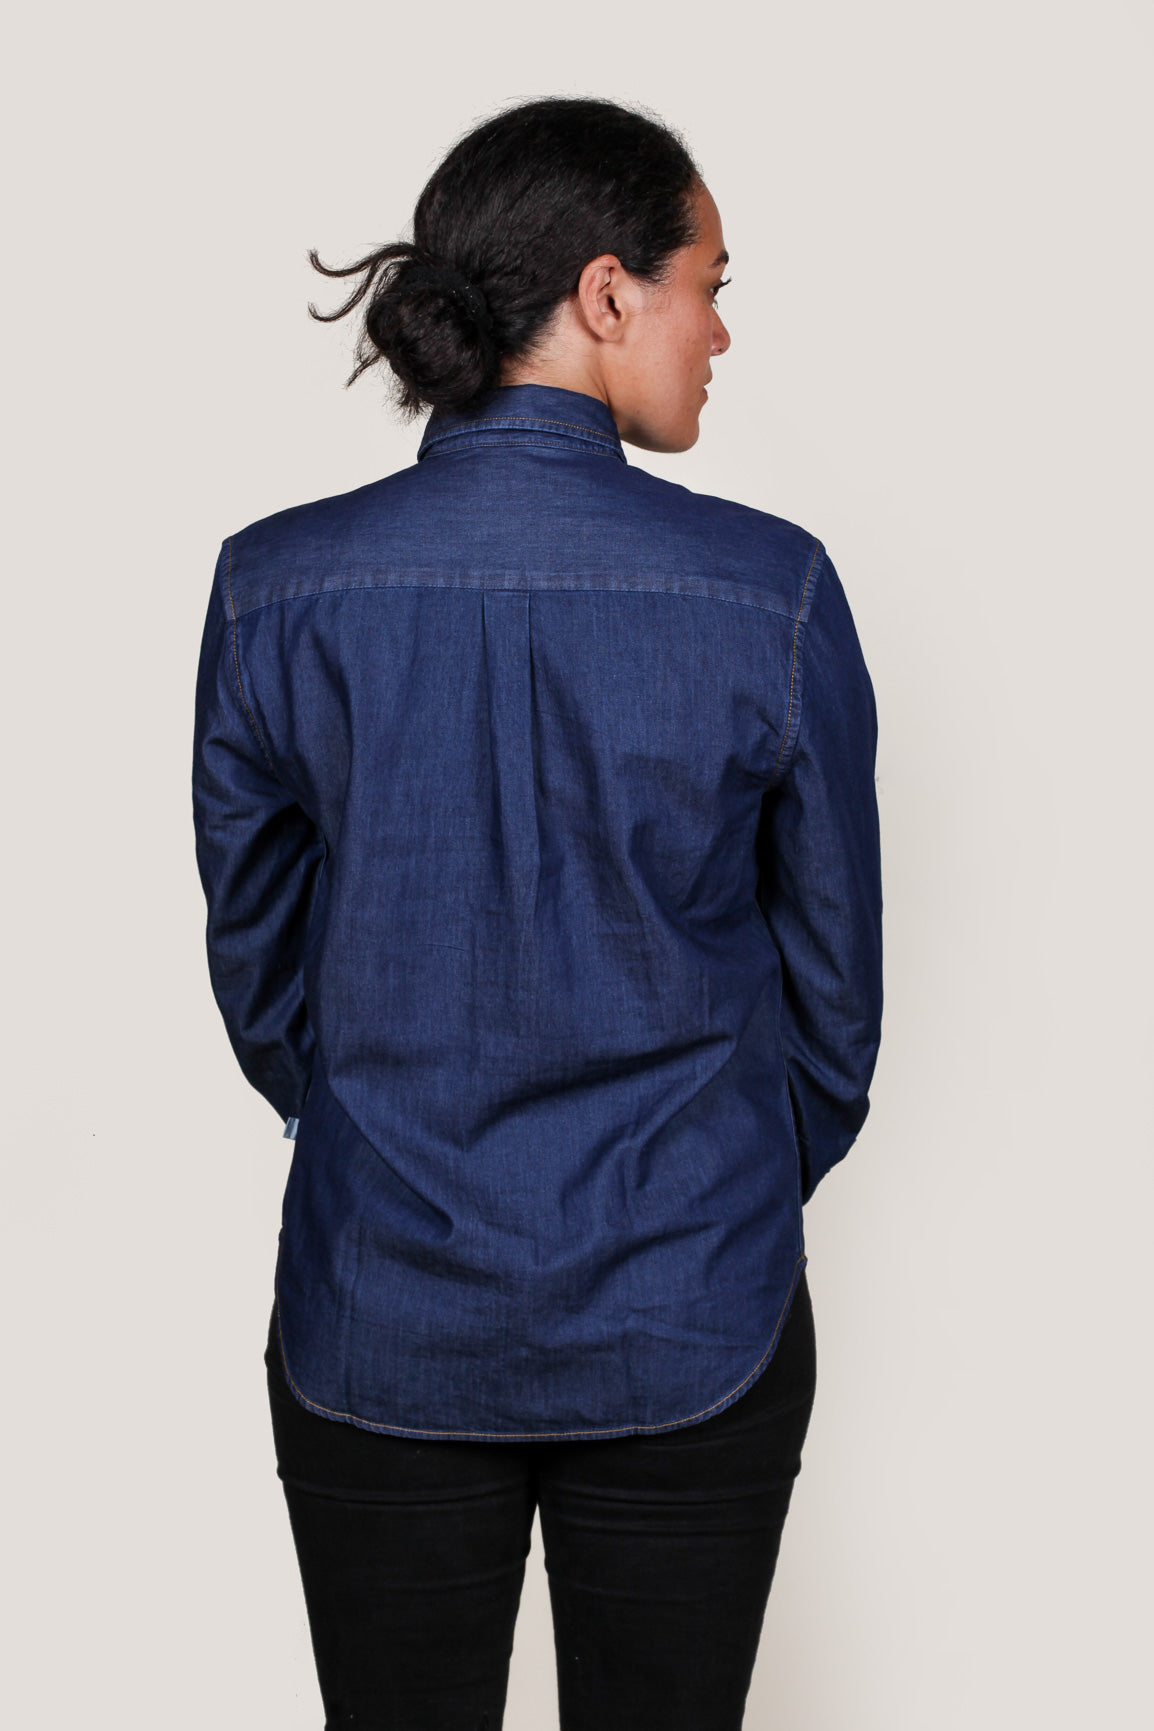 Unique Bargains Women's Plus Size Long Sleeve Chest Pocket Denim Button Work  Shirt 3X Light Blue - Walmart.com